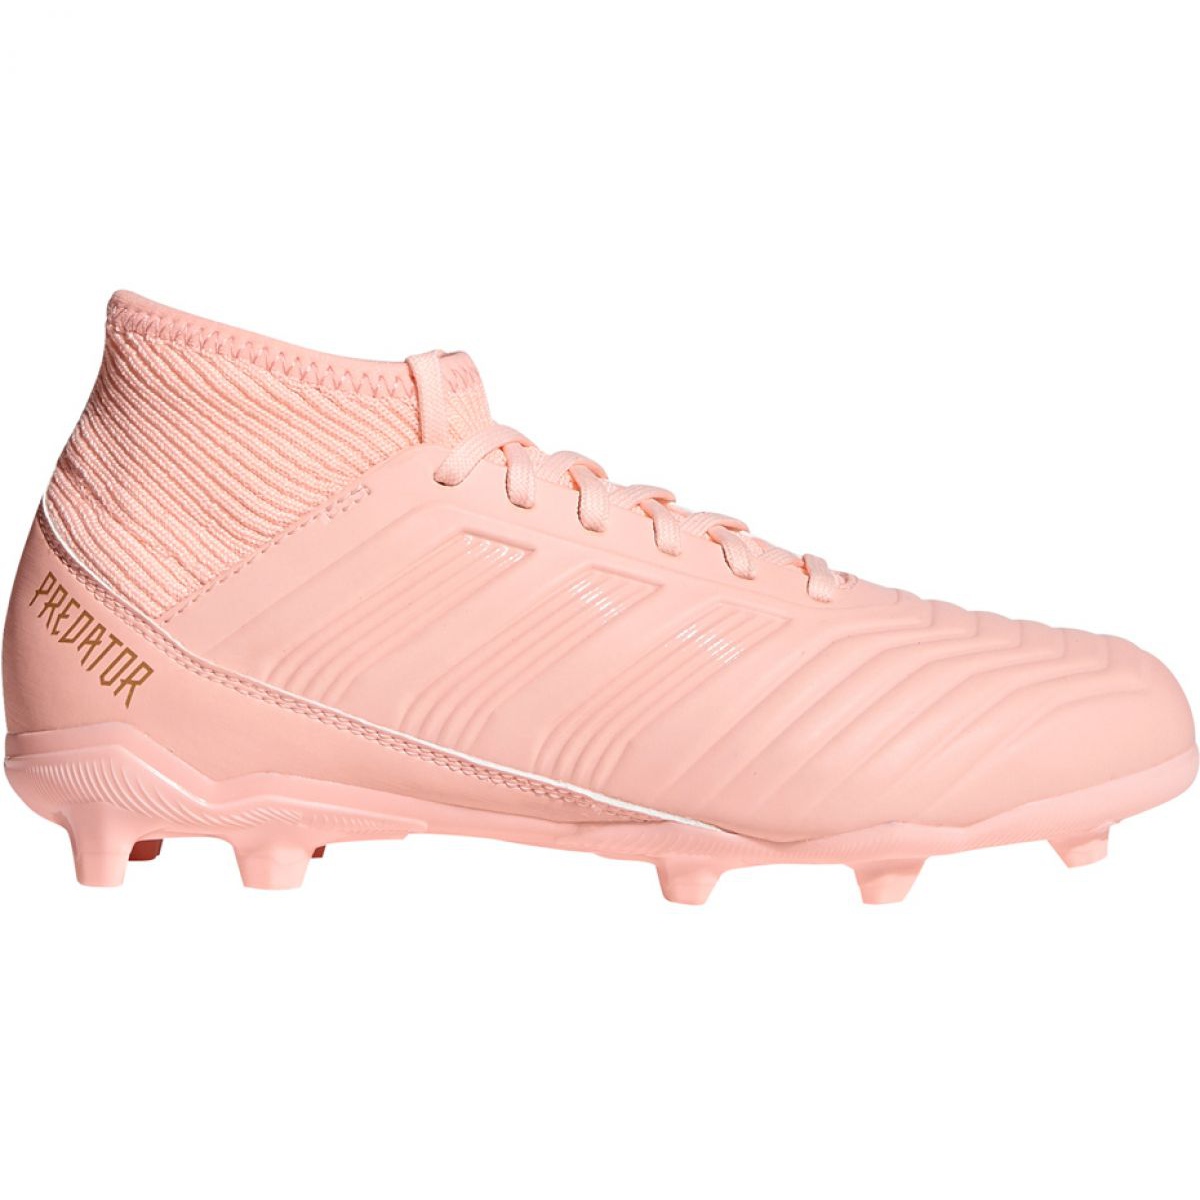 Adidas 18.3 Fg DB2317 football boots pink pink - KeeShoes